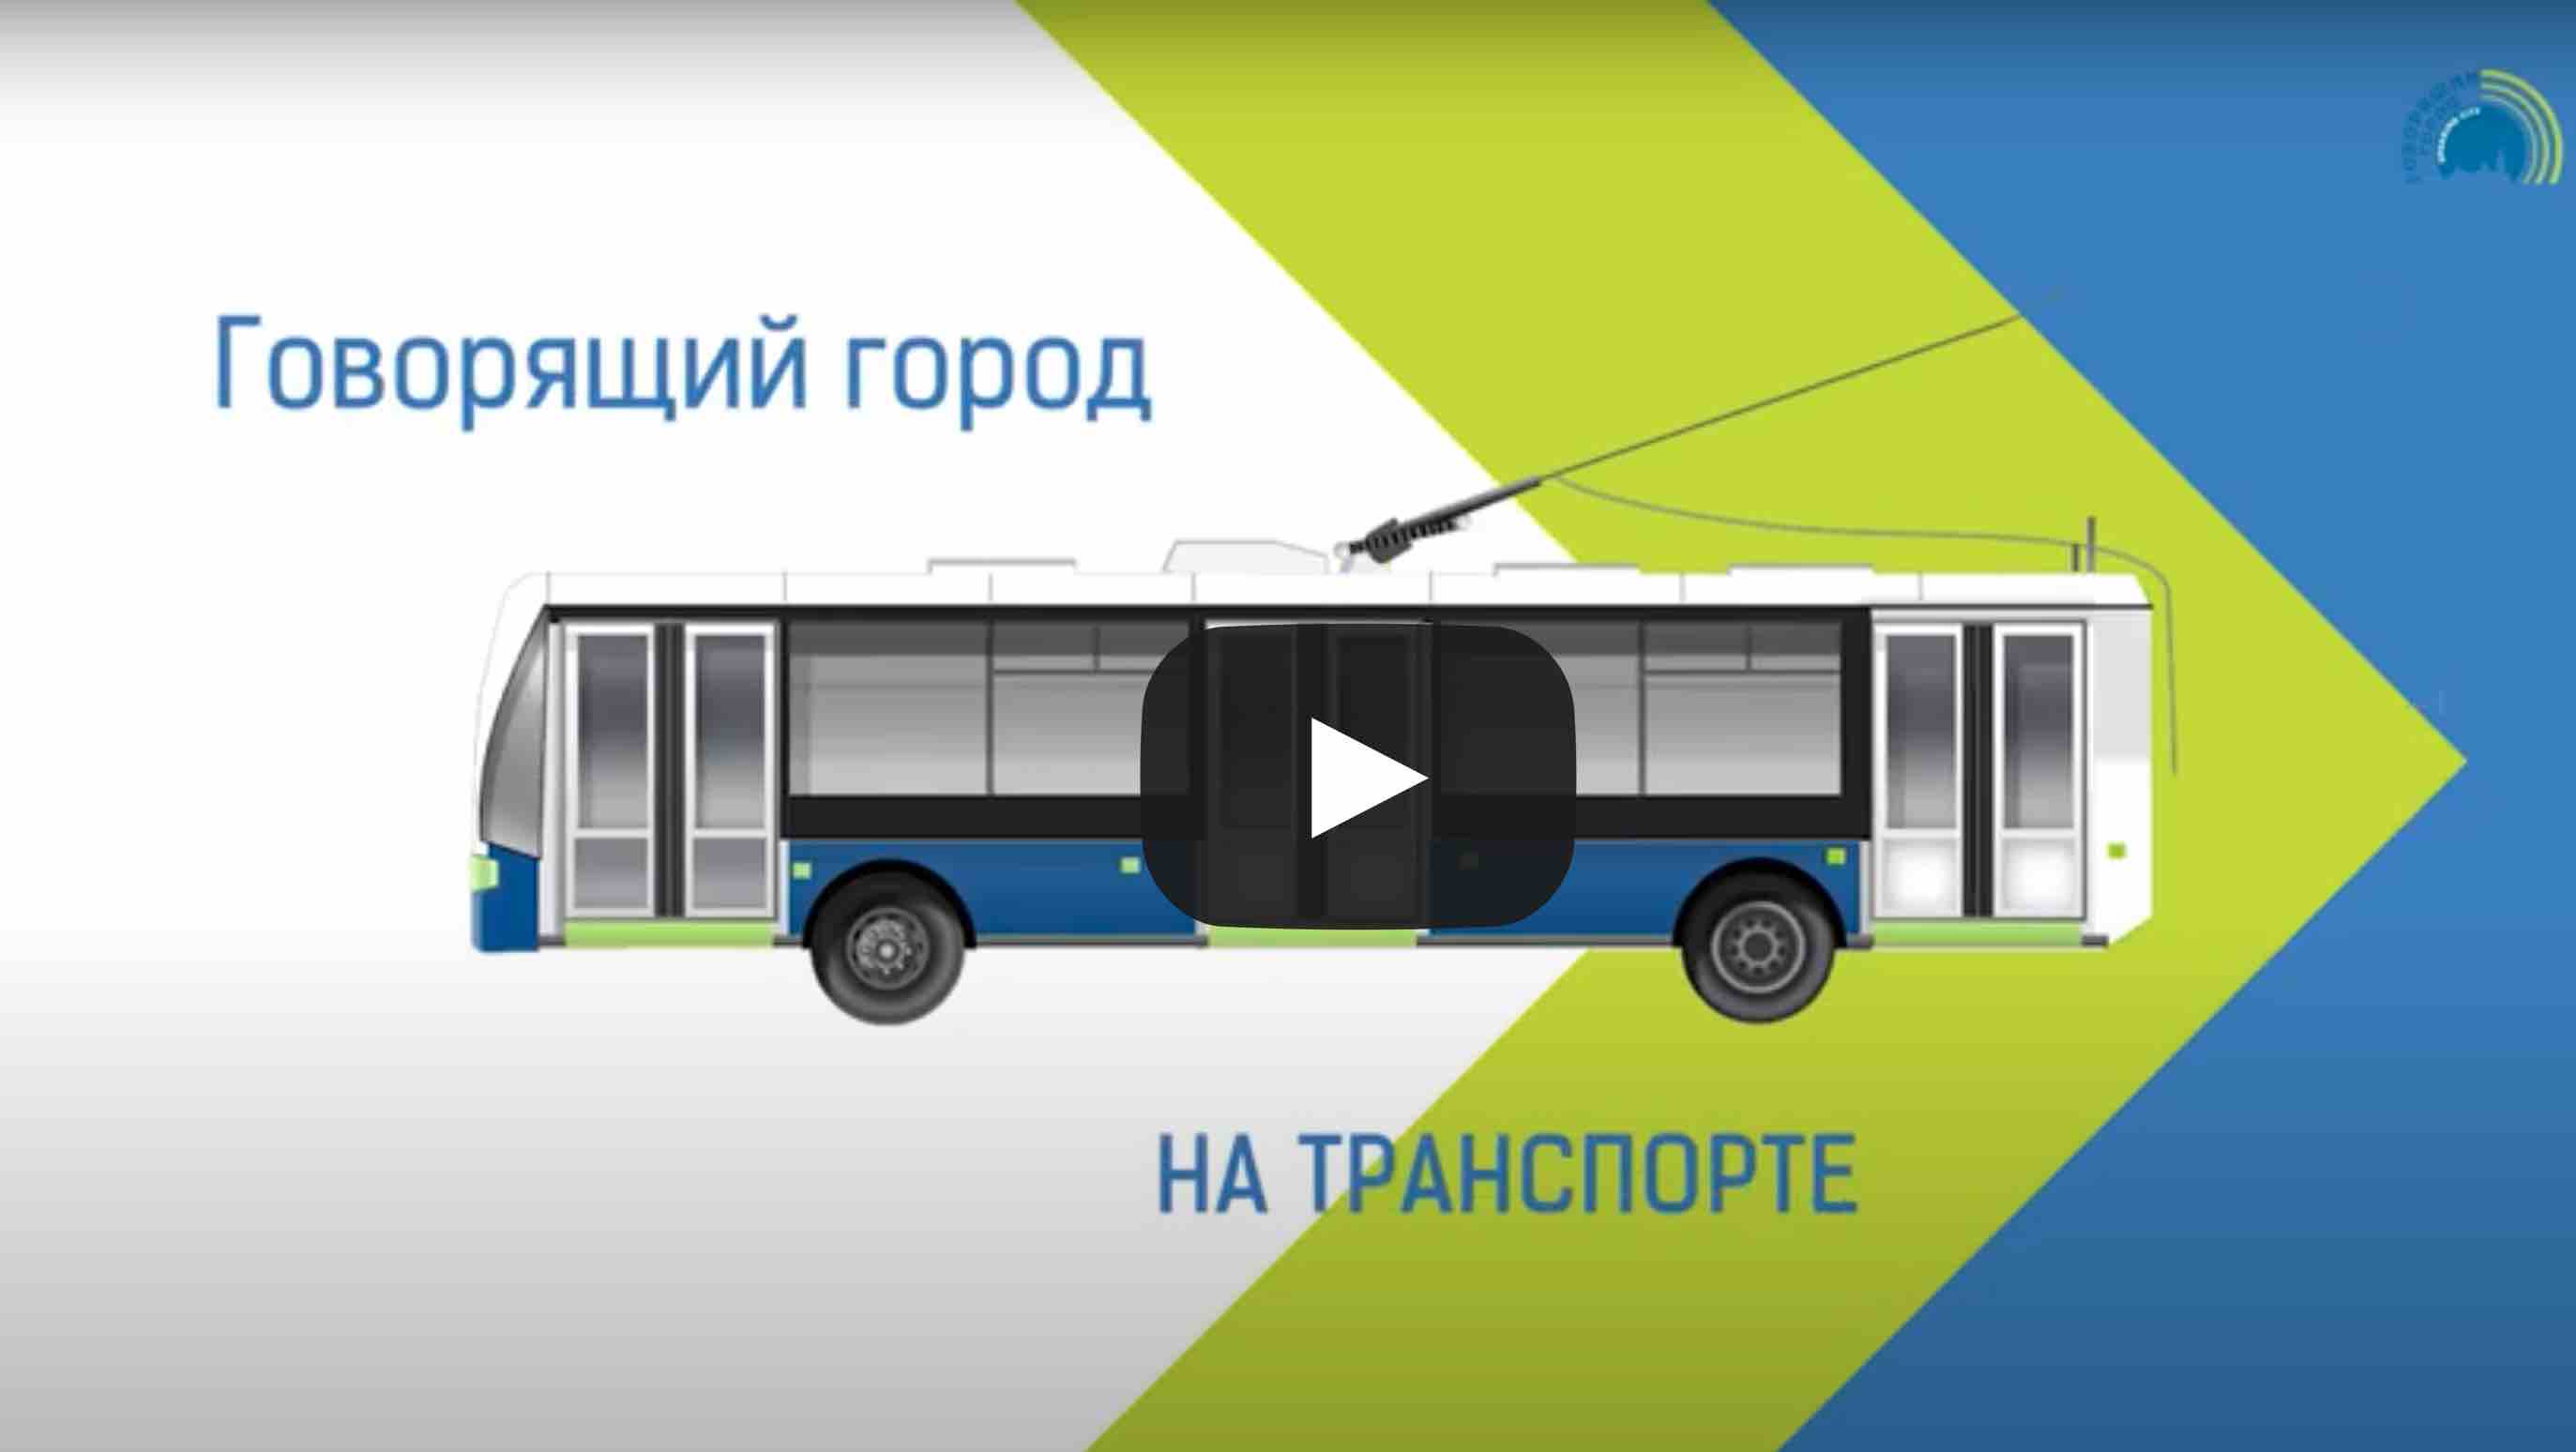 Видео Говорящий город на транспорте